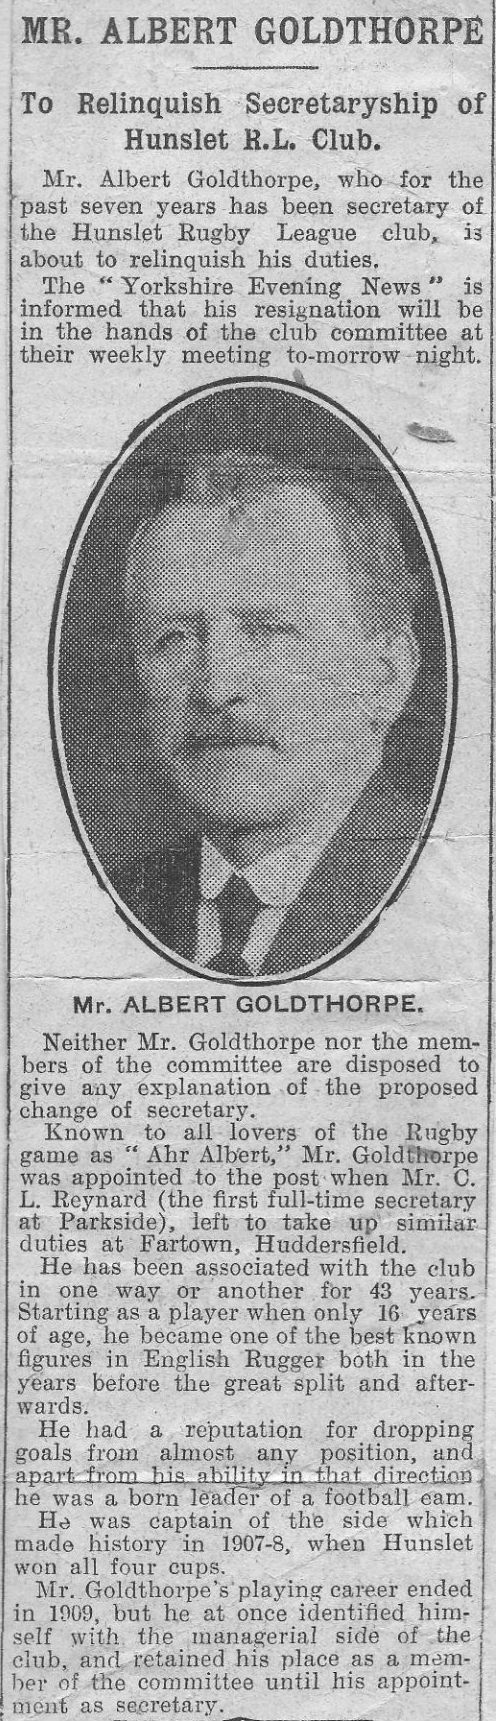 Albert Goldthorpe Resigns